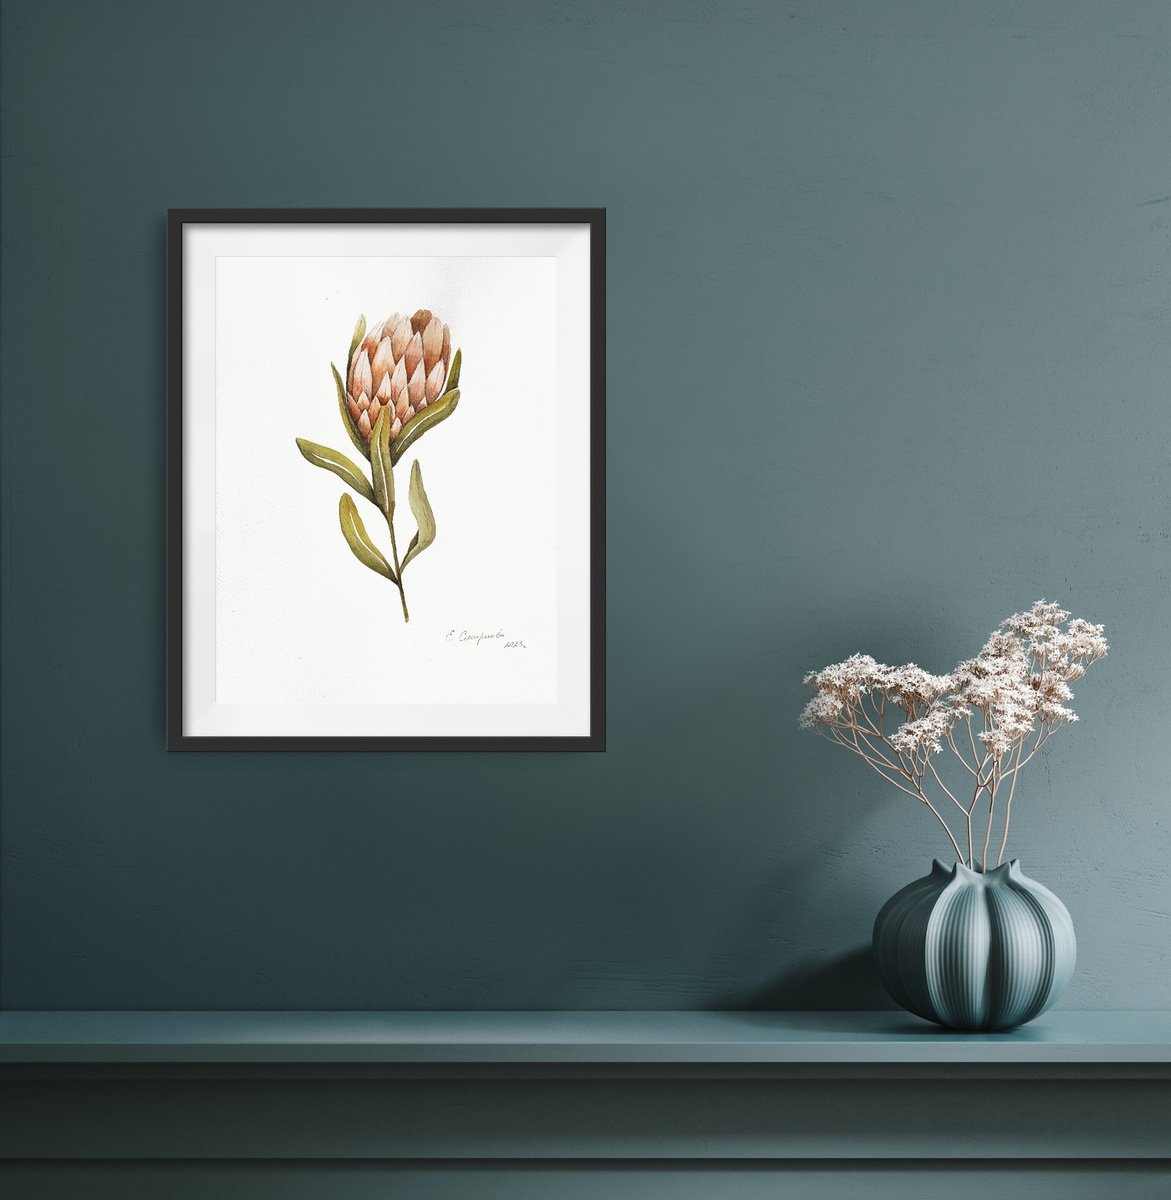 Protea Flower by Evgenia Smirnova